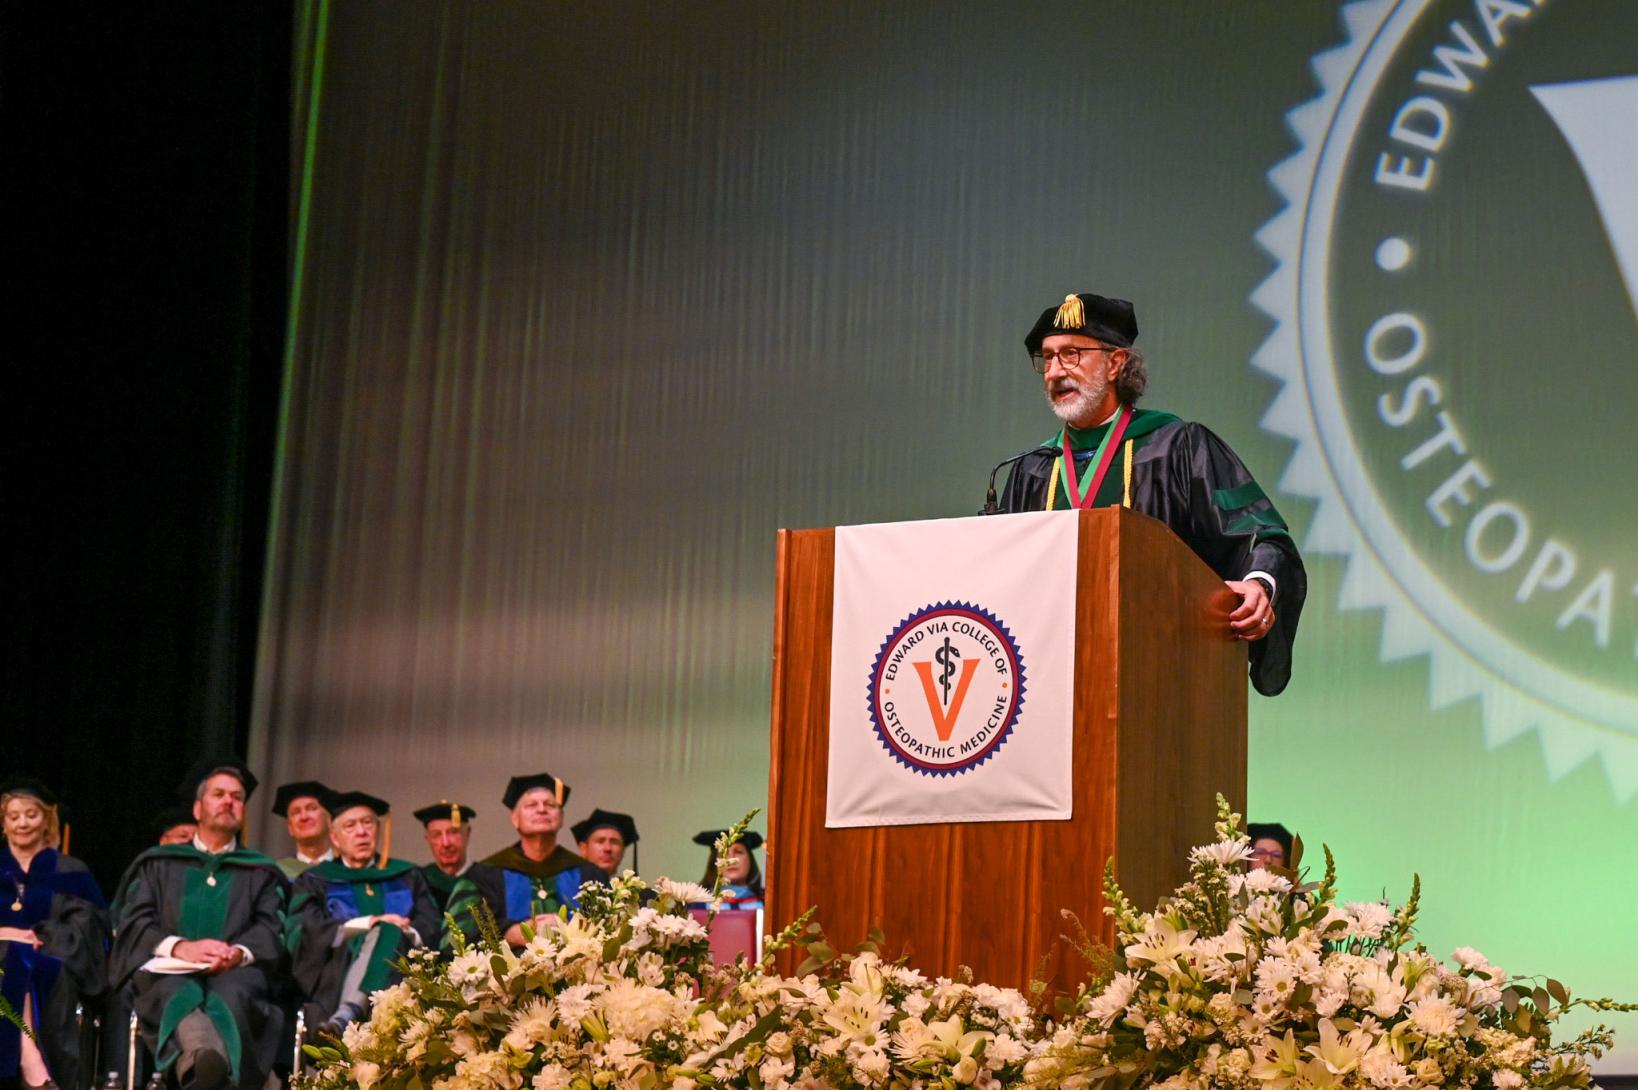 Graduation speaker at podium